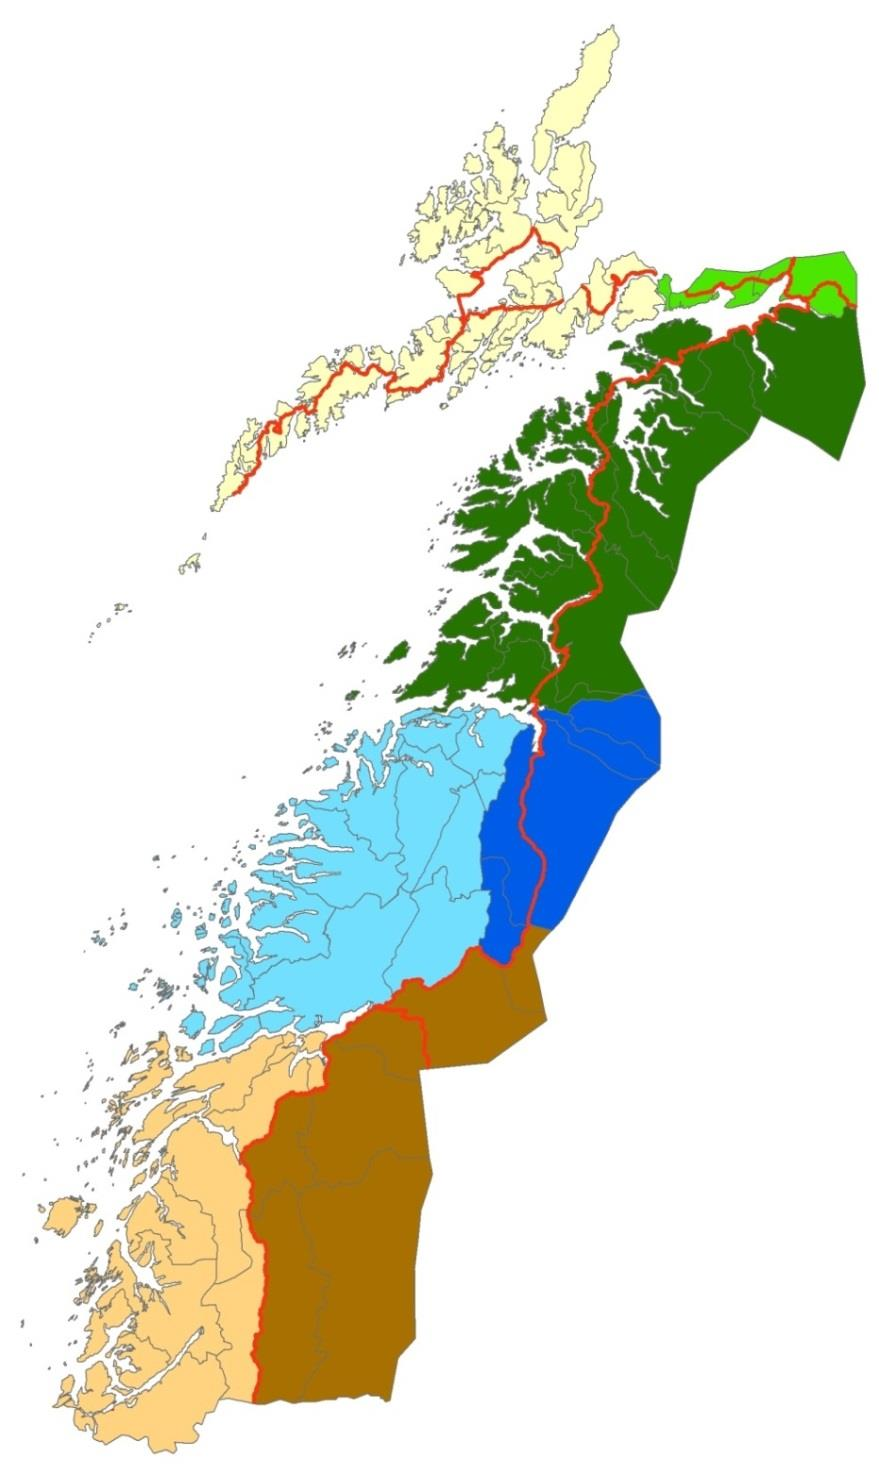 Område 5 Indre Midtfylket, kvote på 4 jerv. Mot nord grenser området Skjerstadfjorden og Indre Nordfylket. Mot vest grenser området til Ytre Midtfylket.